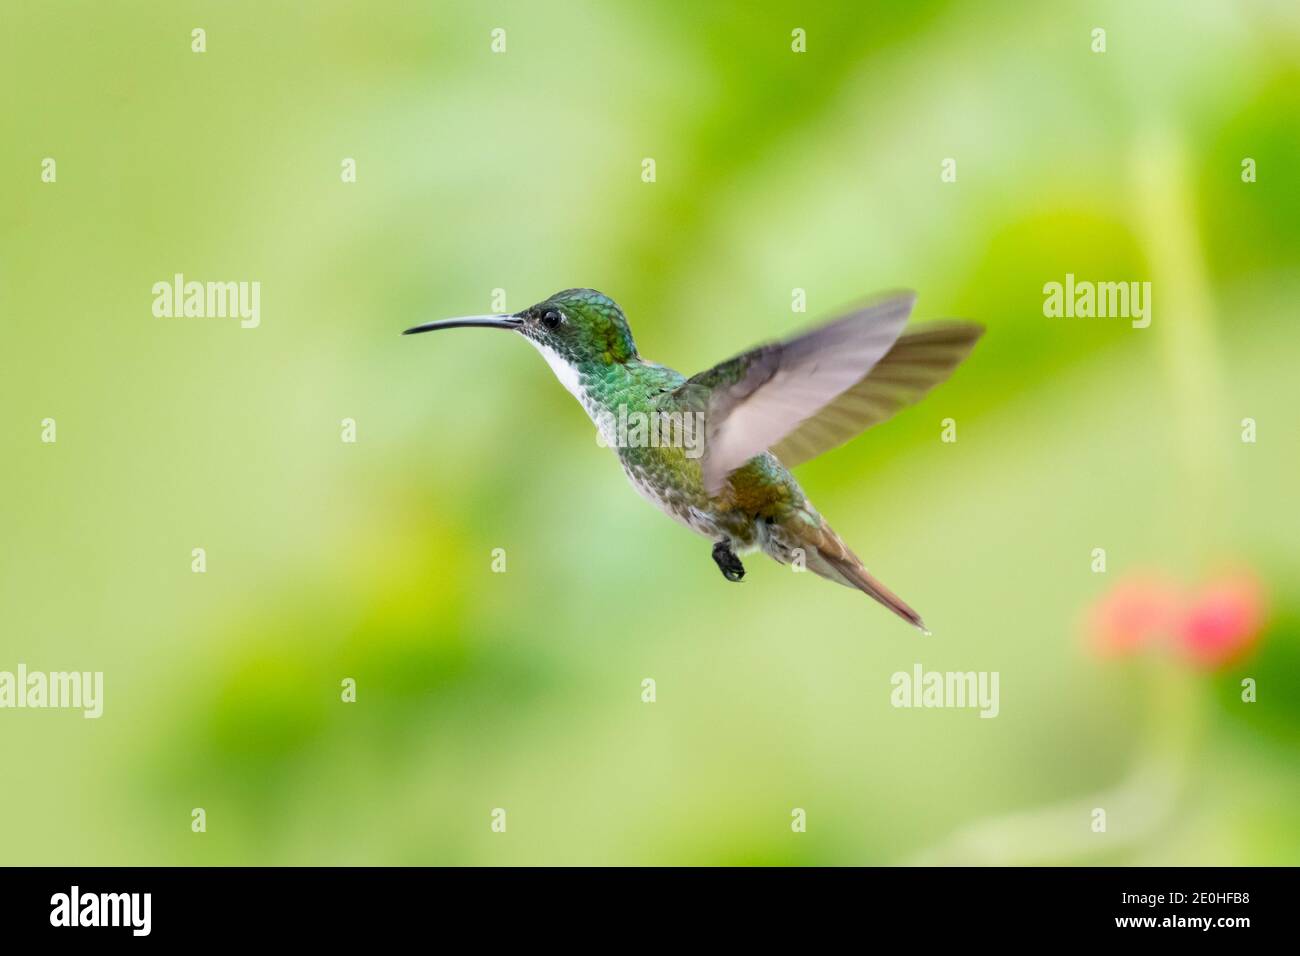 Ein Smaragd-Kolibri mit weißem Chested, der mit einem verschwommenen grünen Hintergrund schwebt. Tierwelt in der Natur. Vogel in freier Wildbahn. Stockfoto